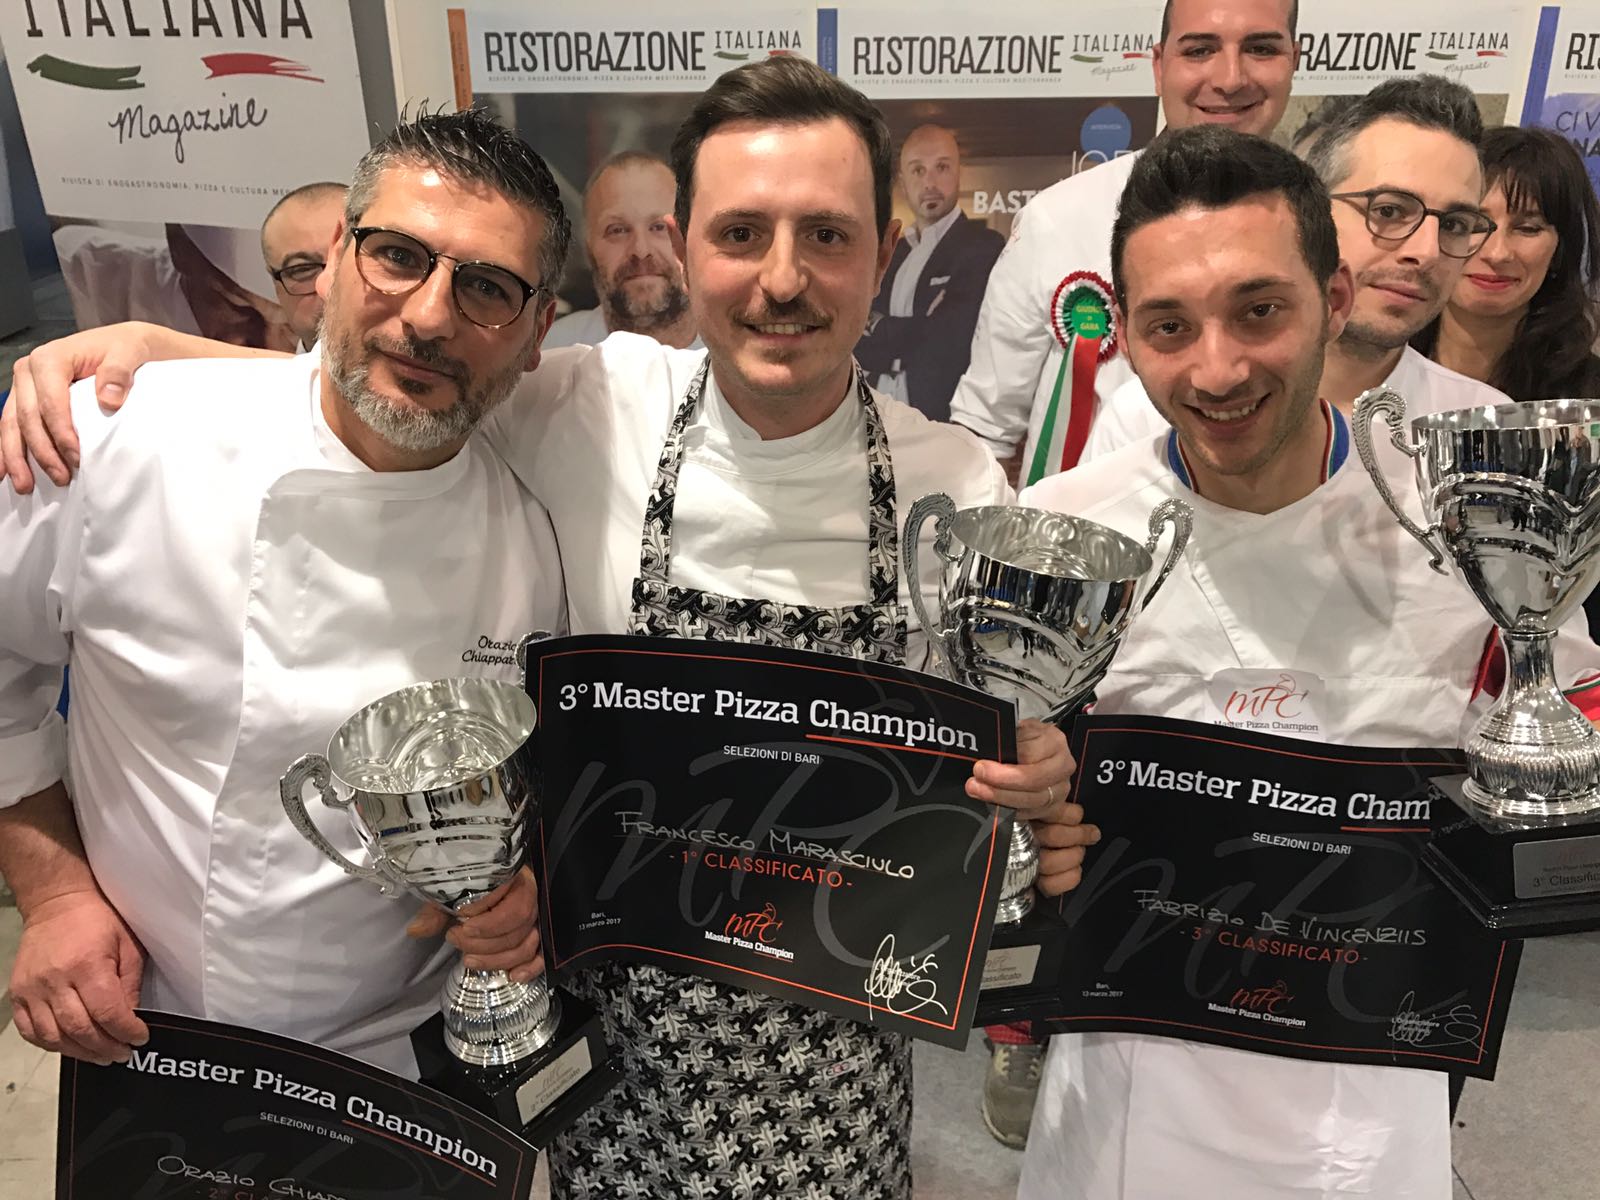 Podio Master Pizza Champion Bari Francesco Marasciulo